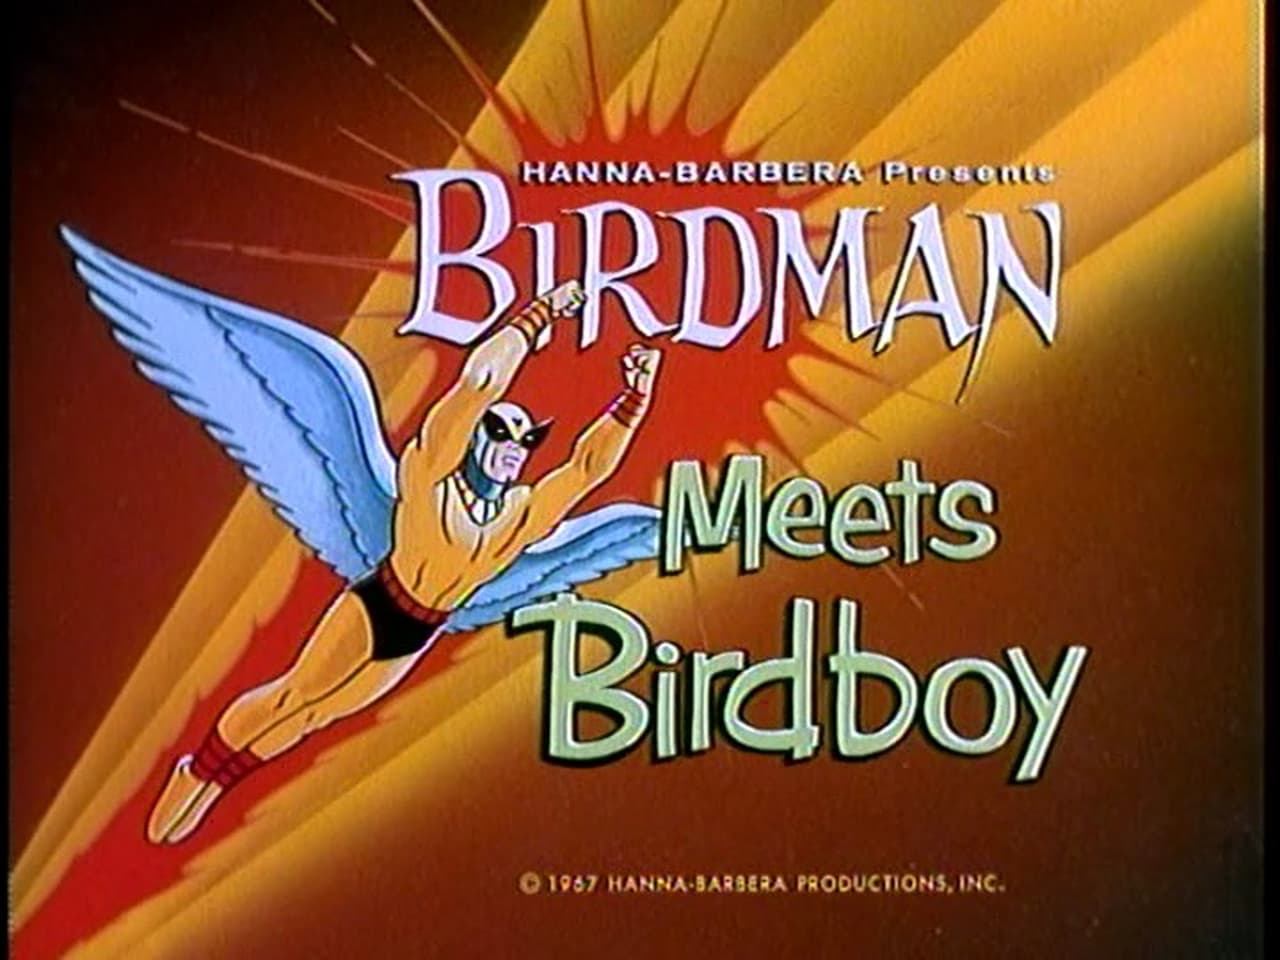 Birdman Meets Birdboy